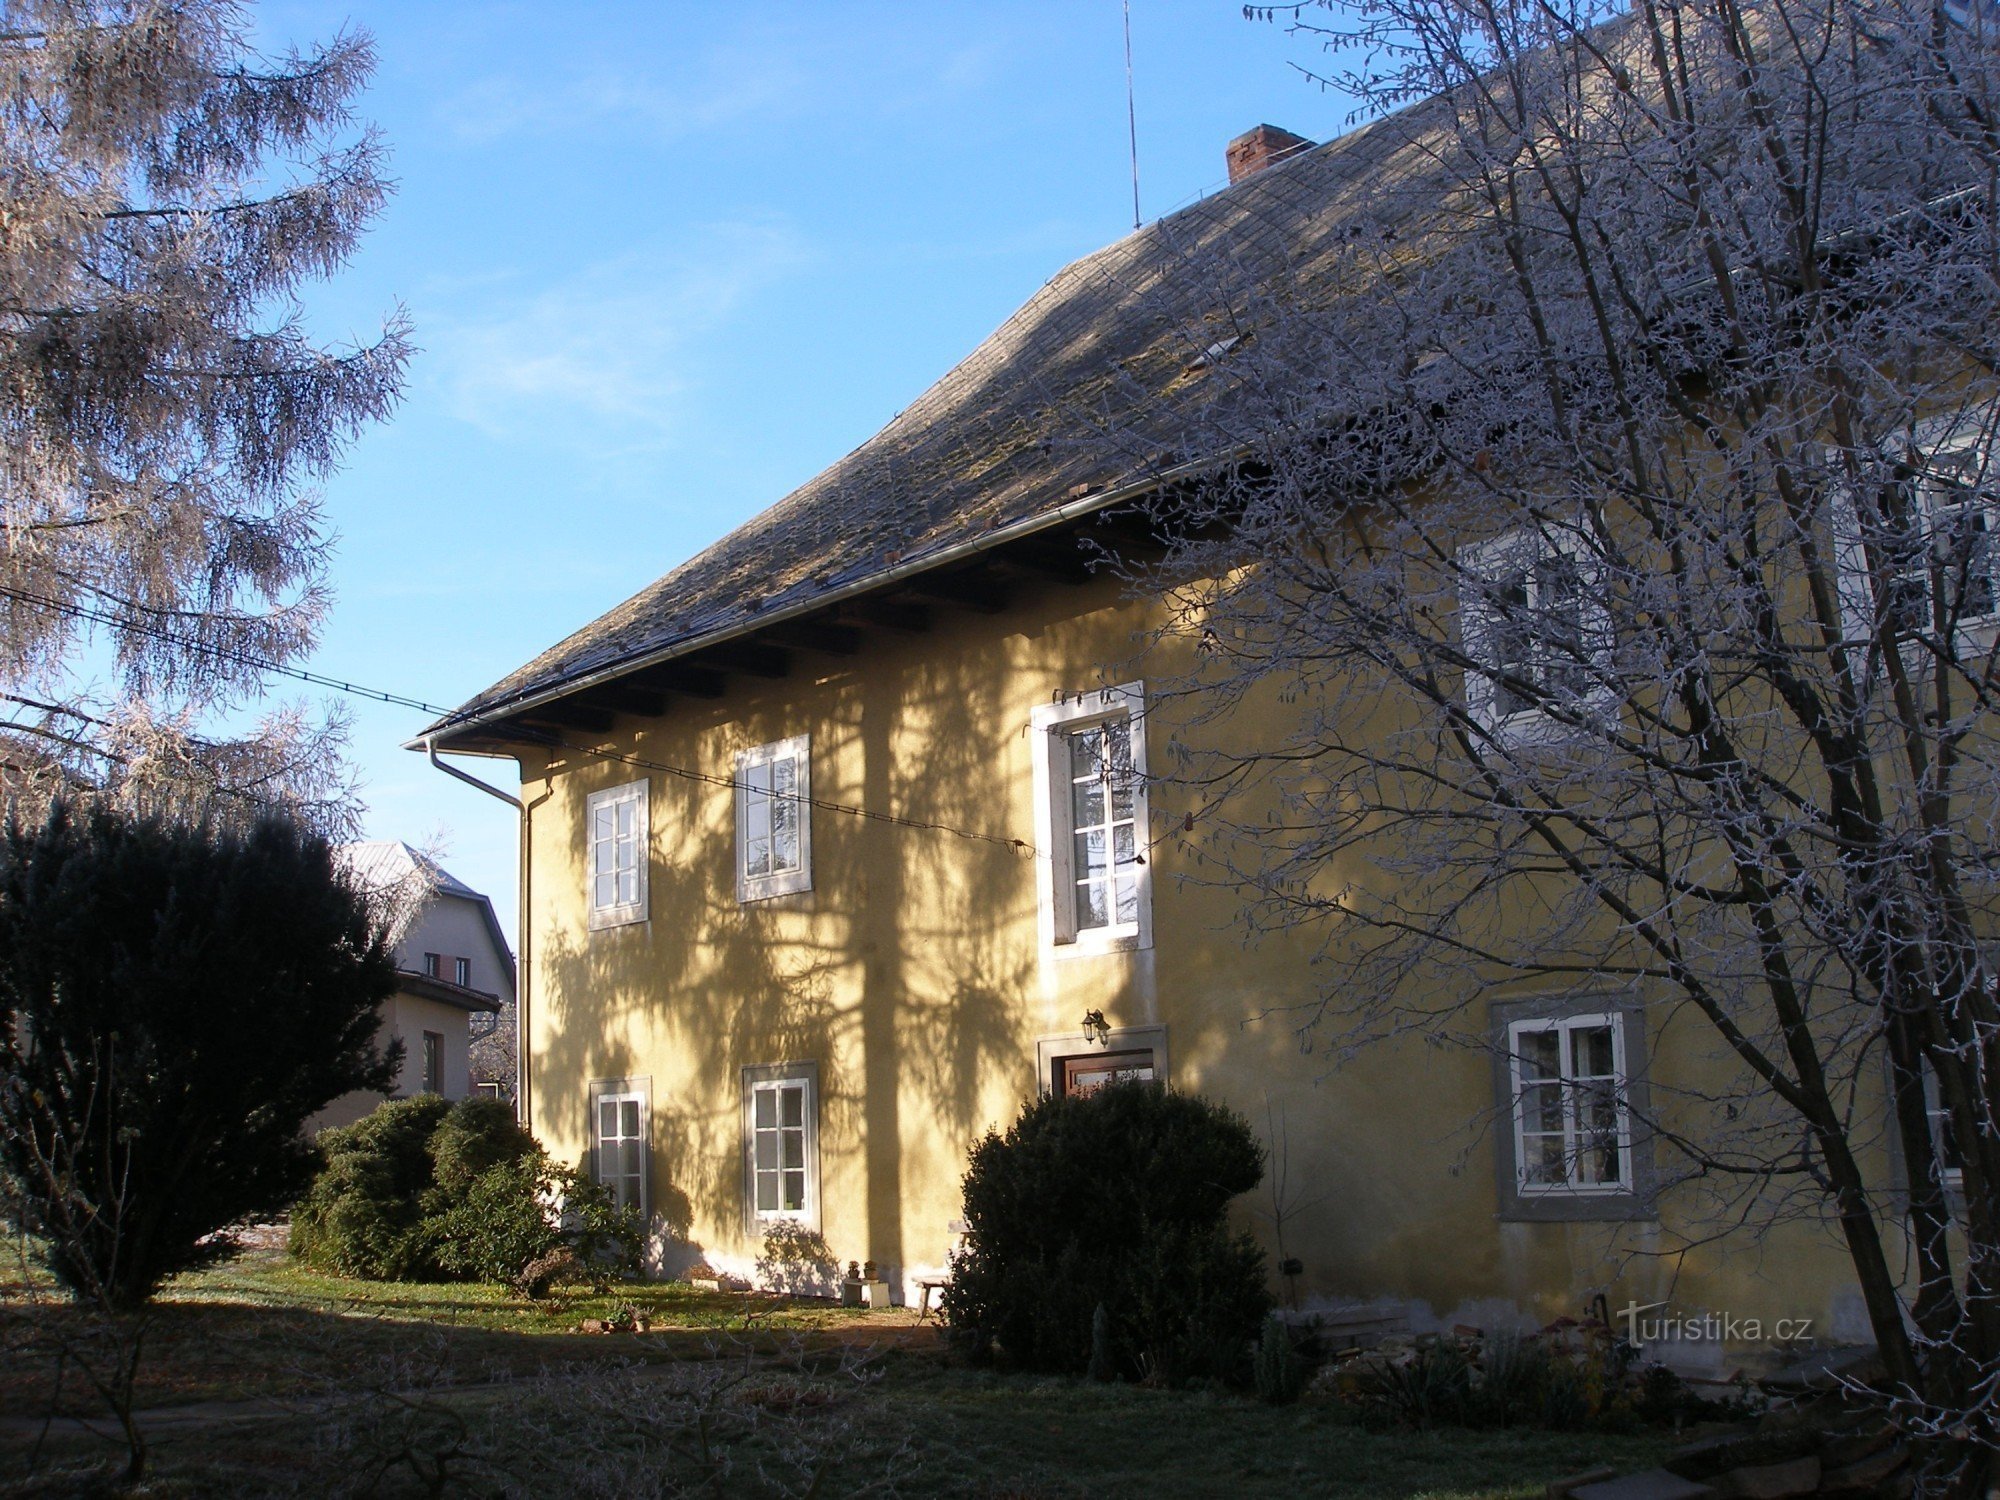 De voormalige pastorie in het dorp Sudslava gebouwd in 1692